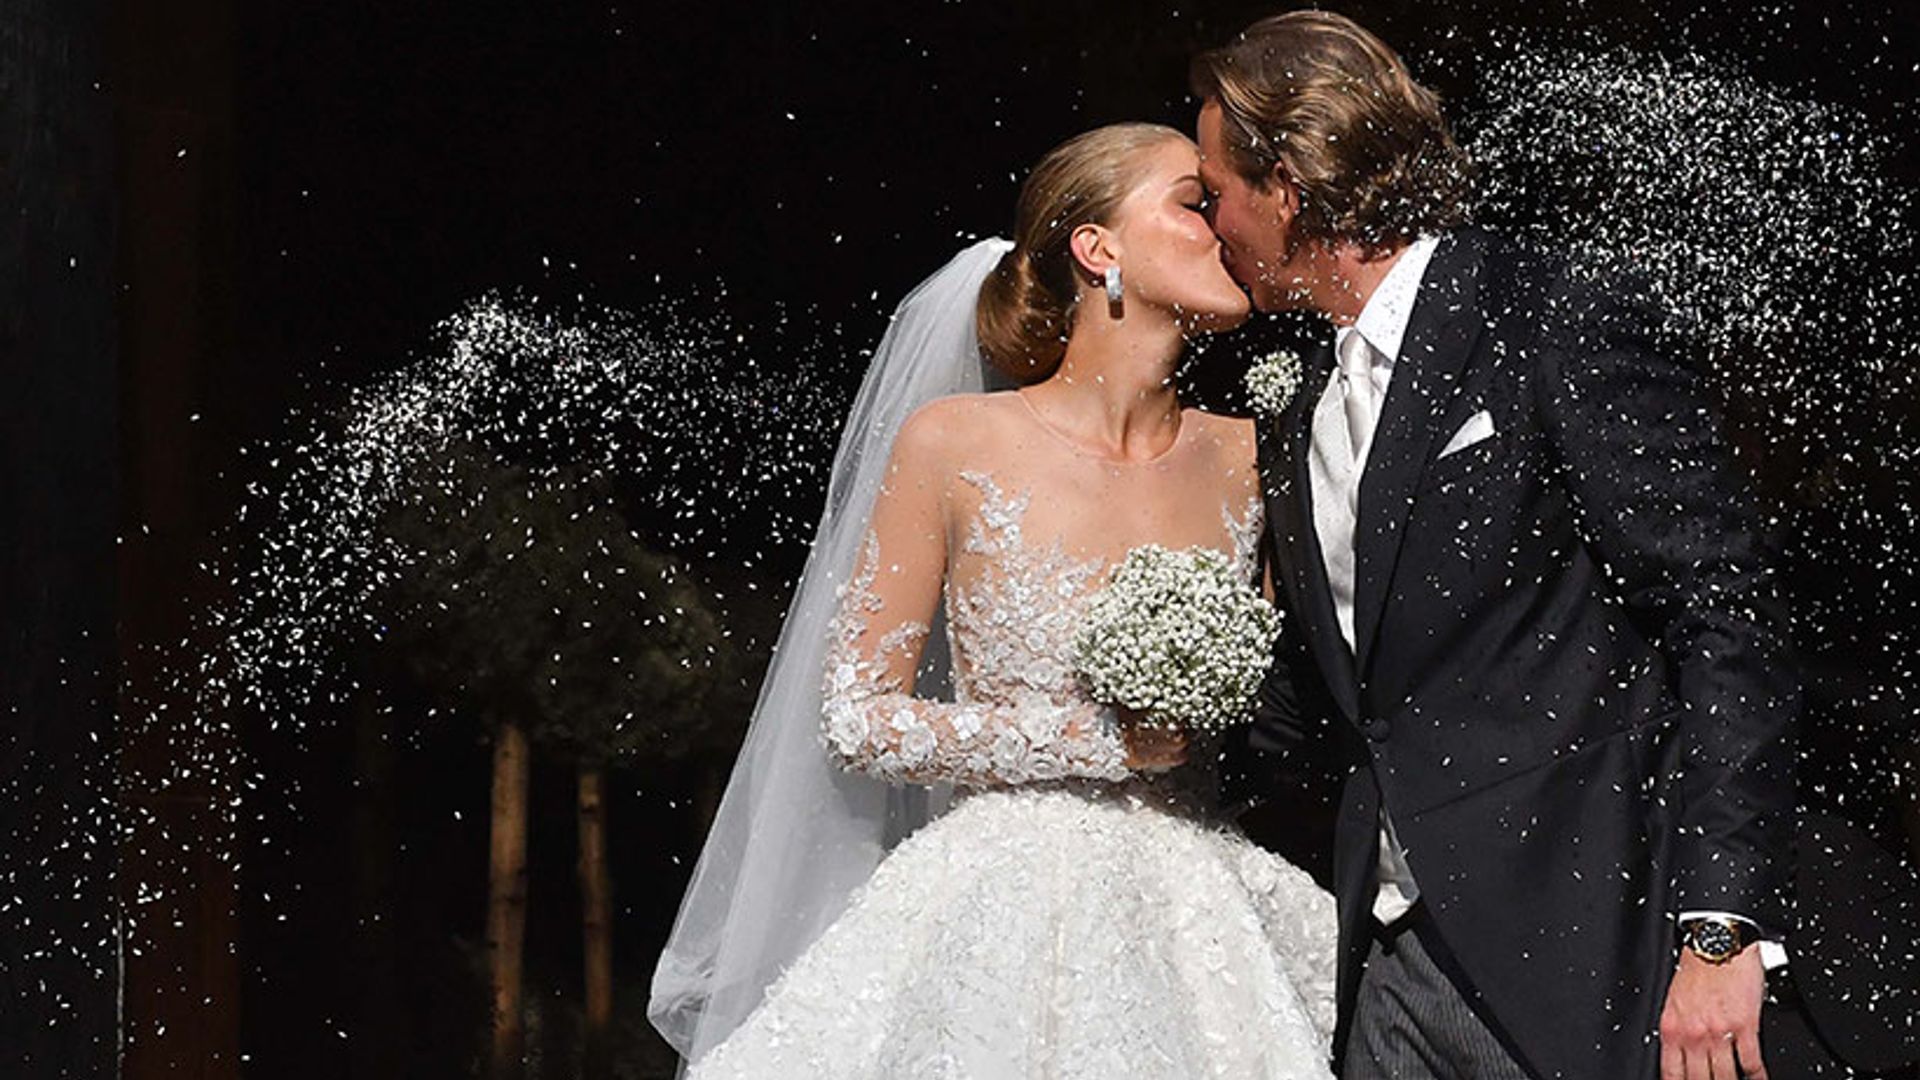 Manifesteren Beoordeling Mam Victoria Swarovski's £700,000 wedding dress featured 500,000 crystals |  HELLO!